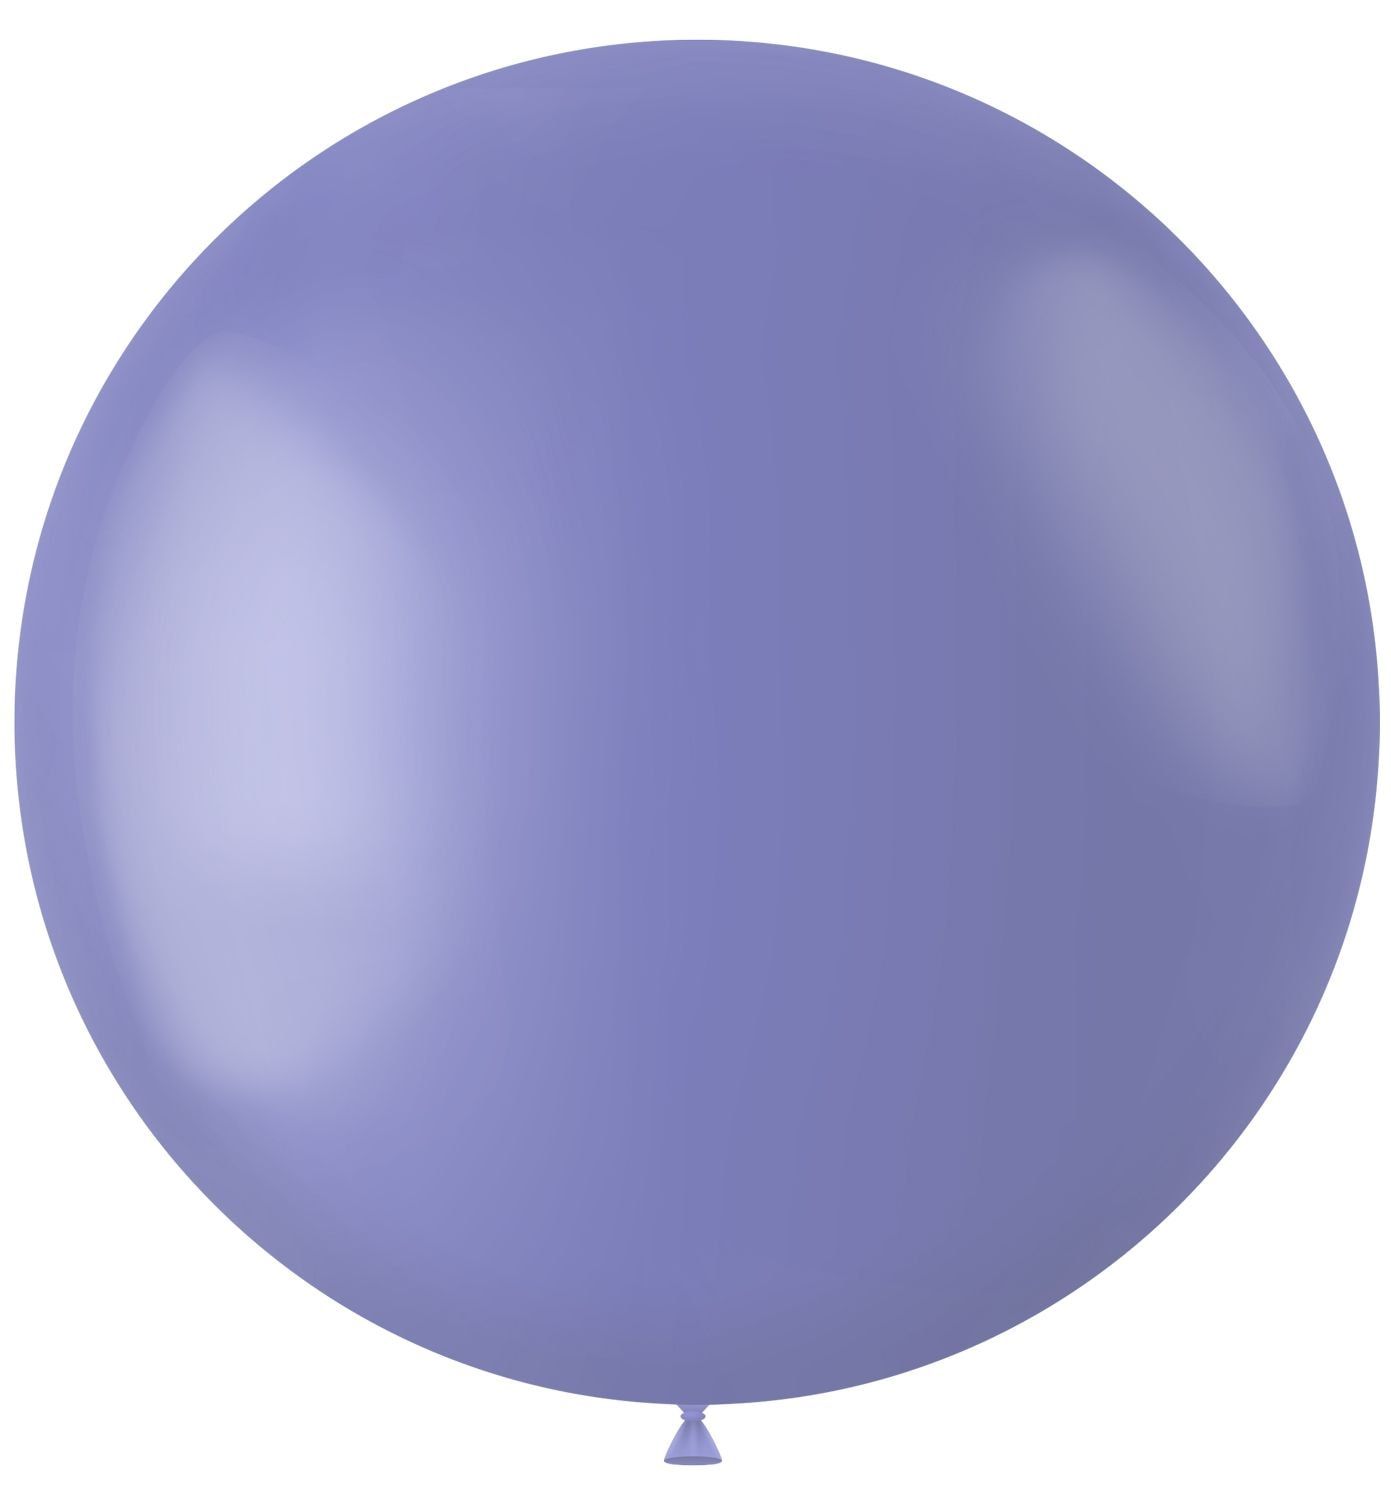 Ballonnen blauw mat 78cm